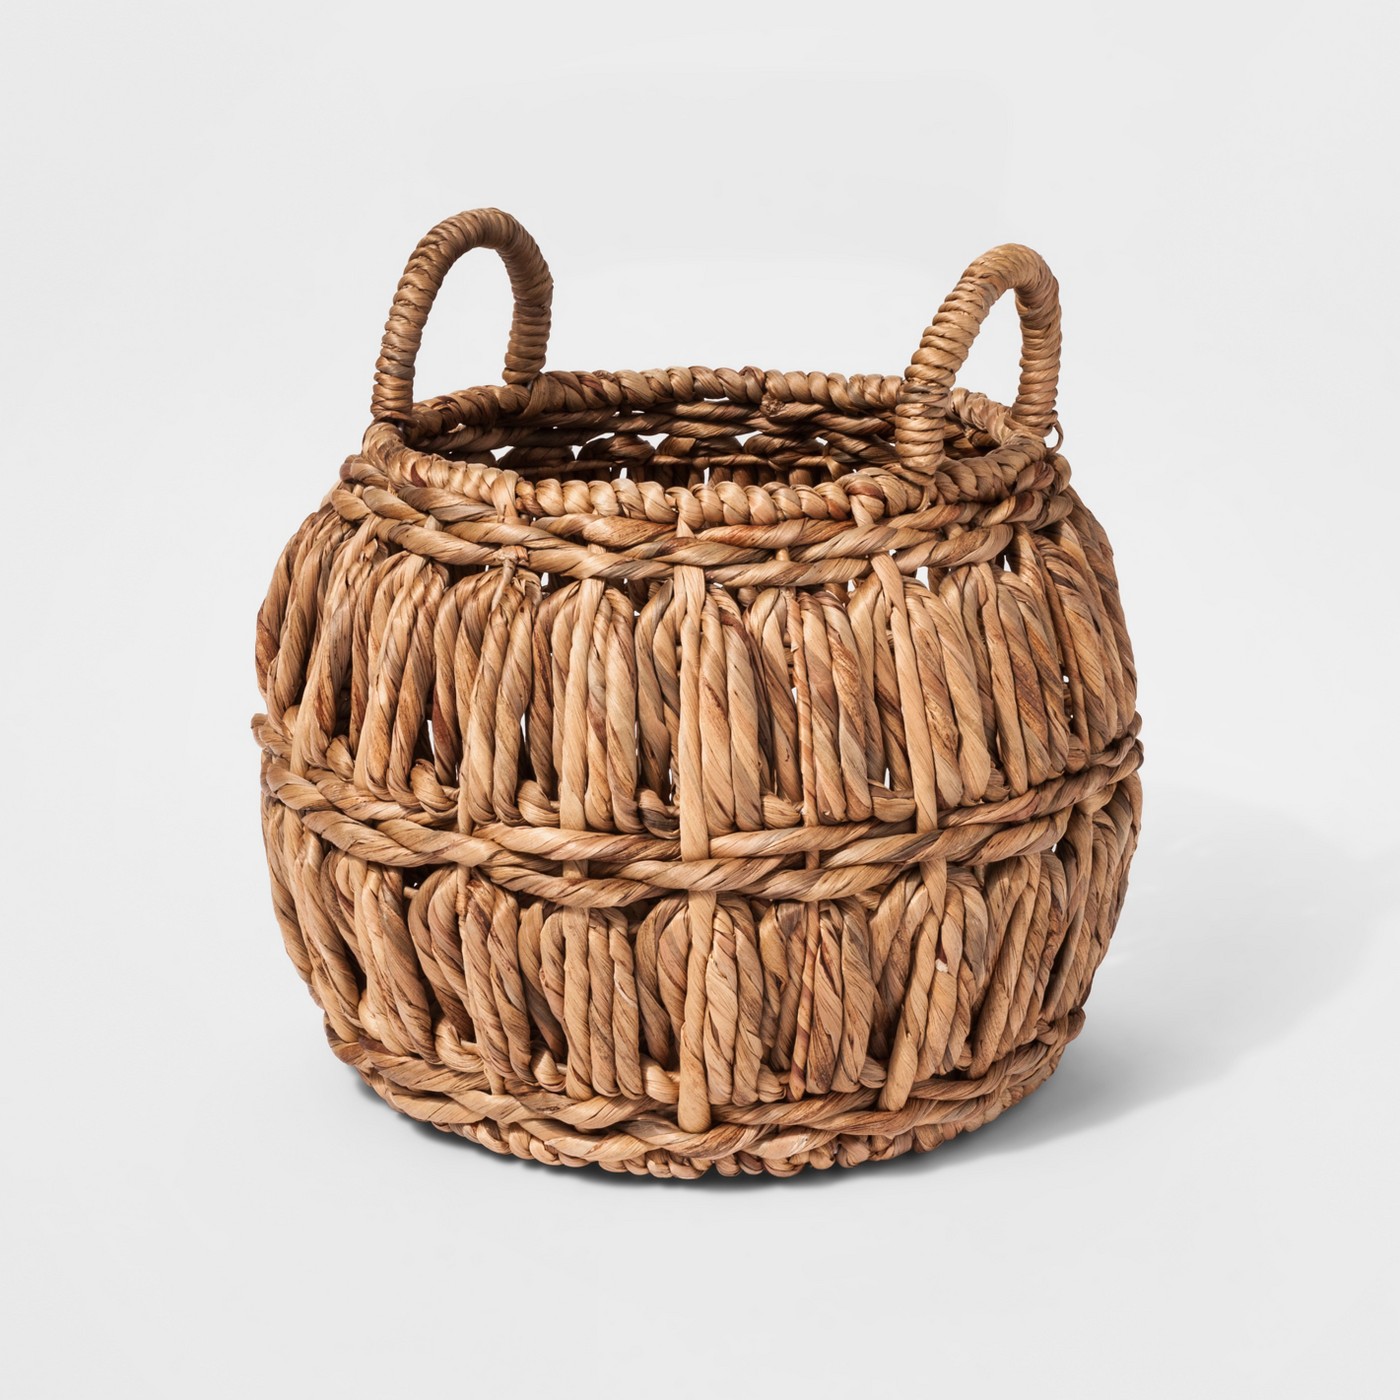 Basket $28